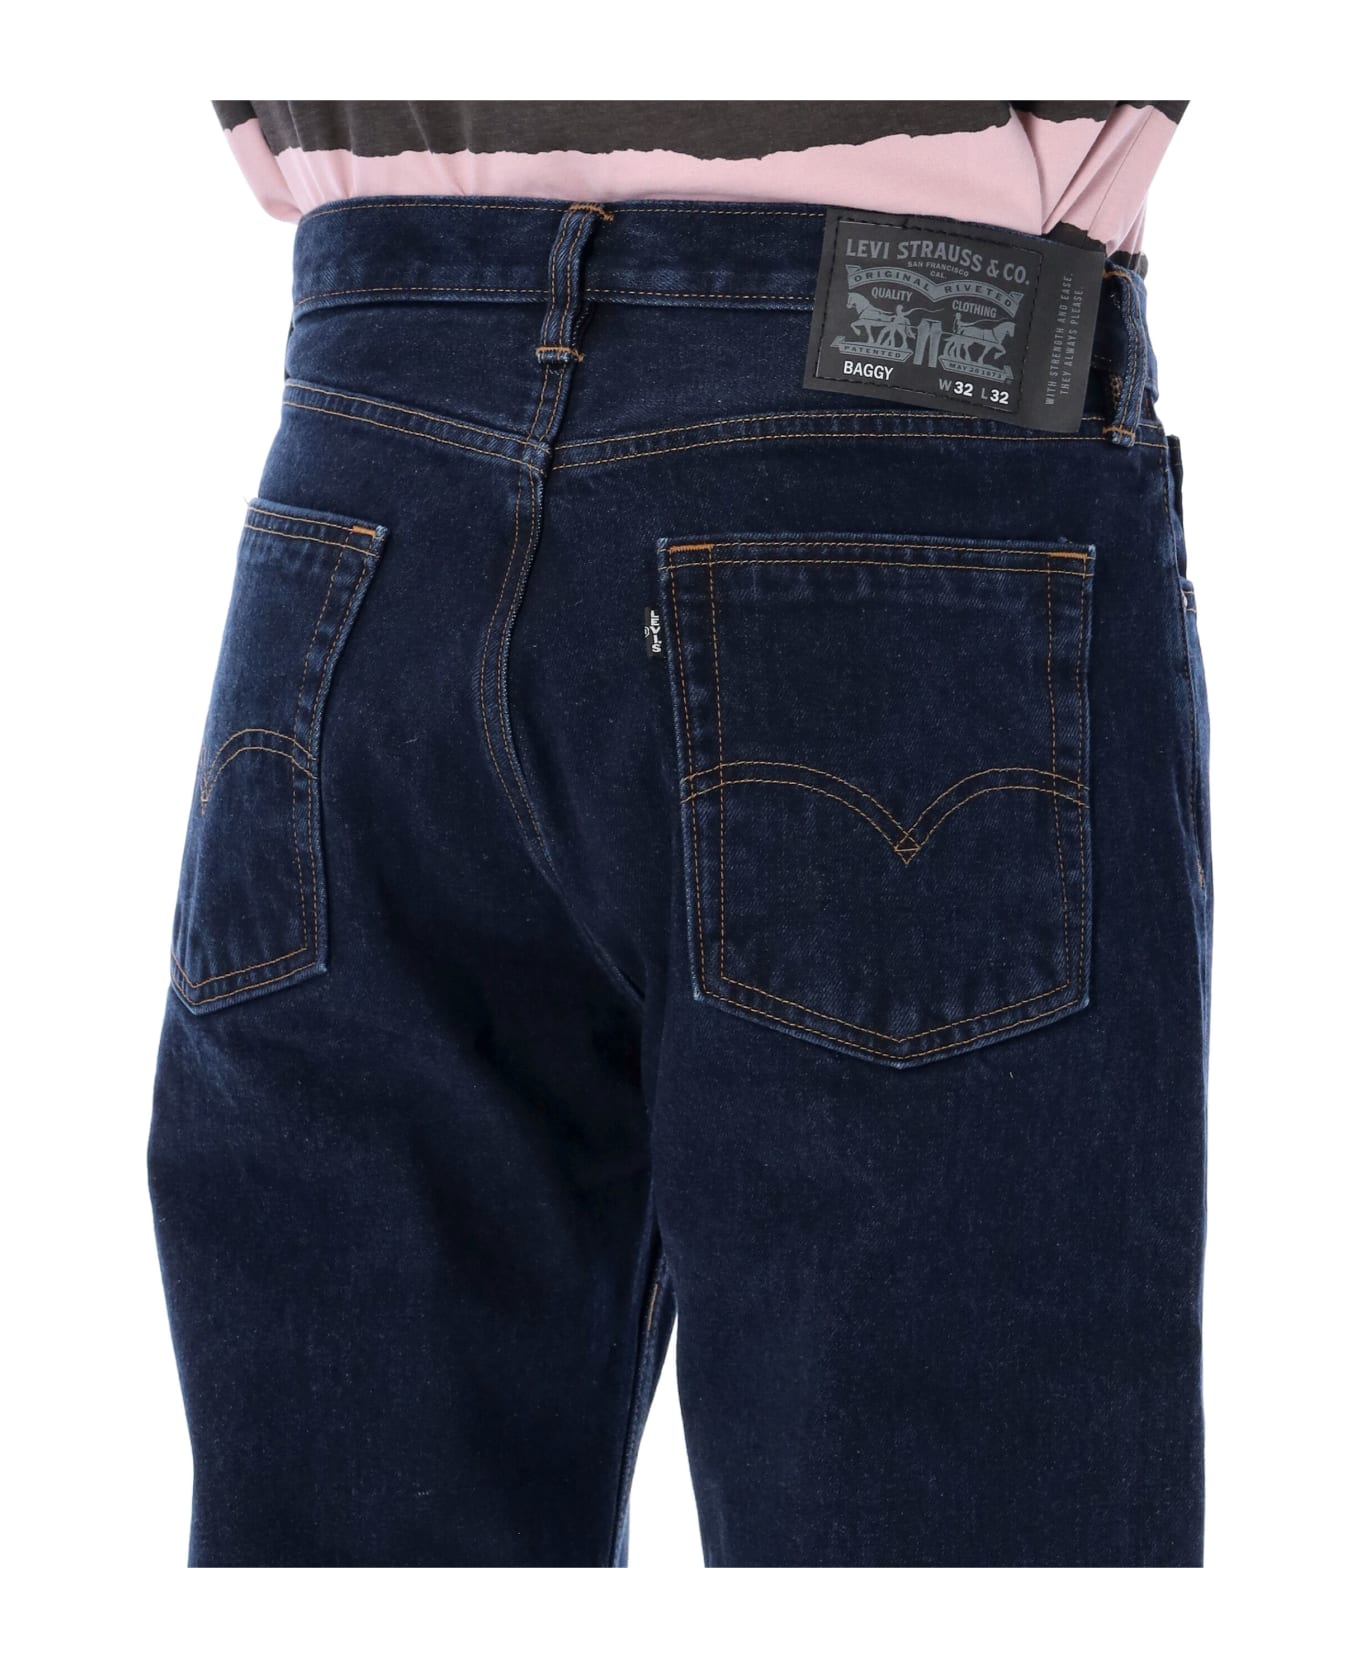 Levi's Cotton Baggy Five Pocket Jeans - DK BLUE